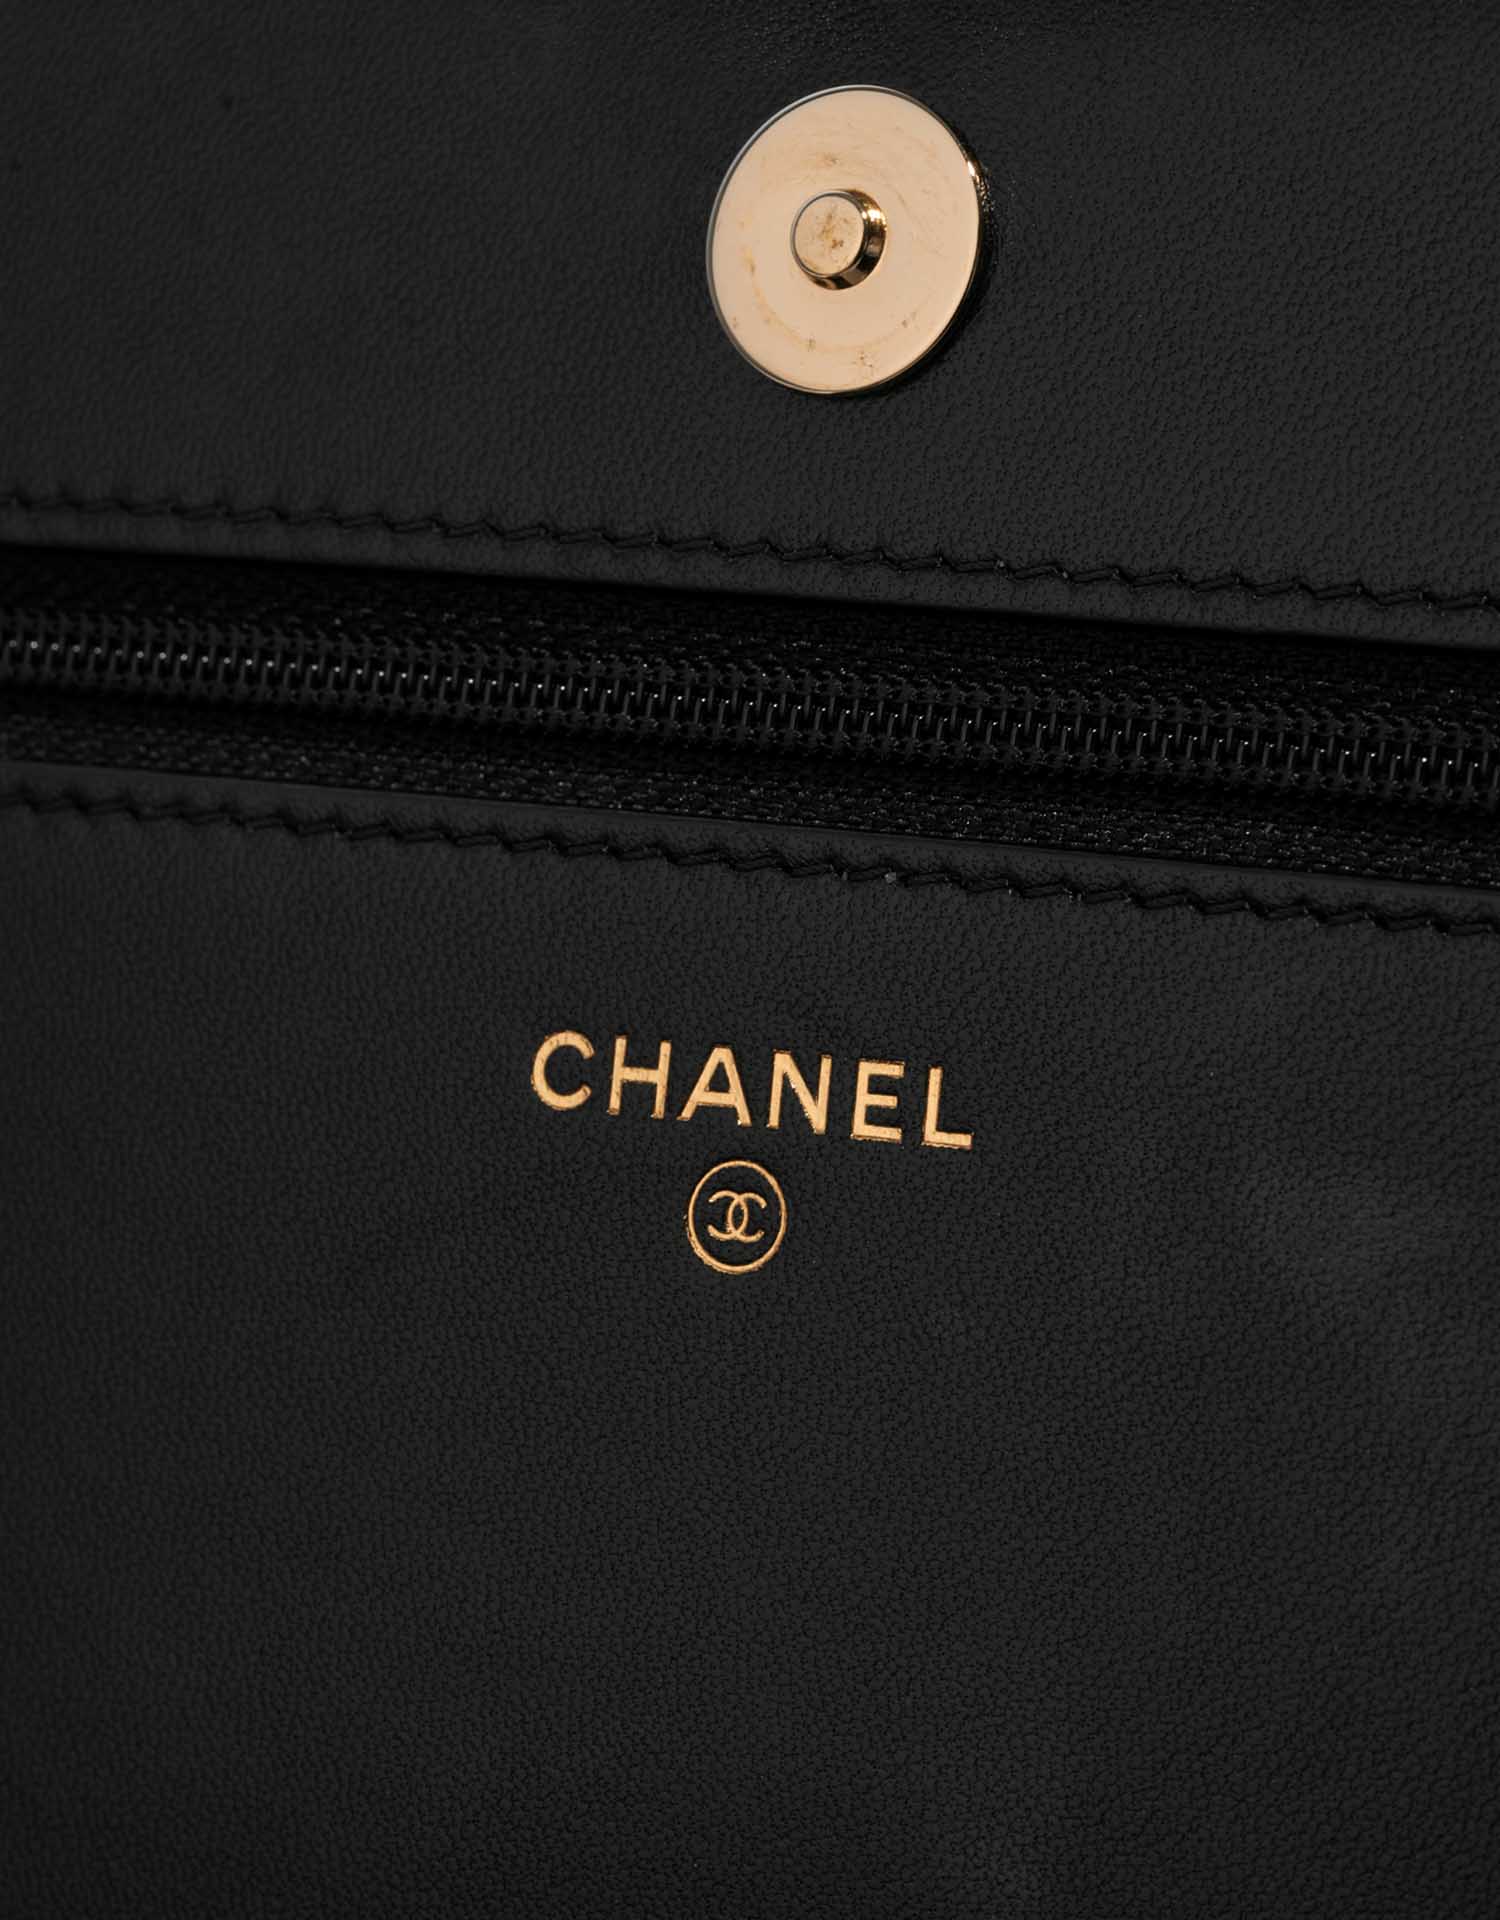 Sac Chanel d'occasion Timeless WOC Agneau Noir Lucky Charms Noir Logo | Vendez votre sac de créateur sur Saclab.com